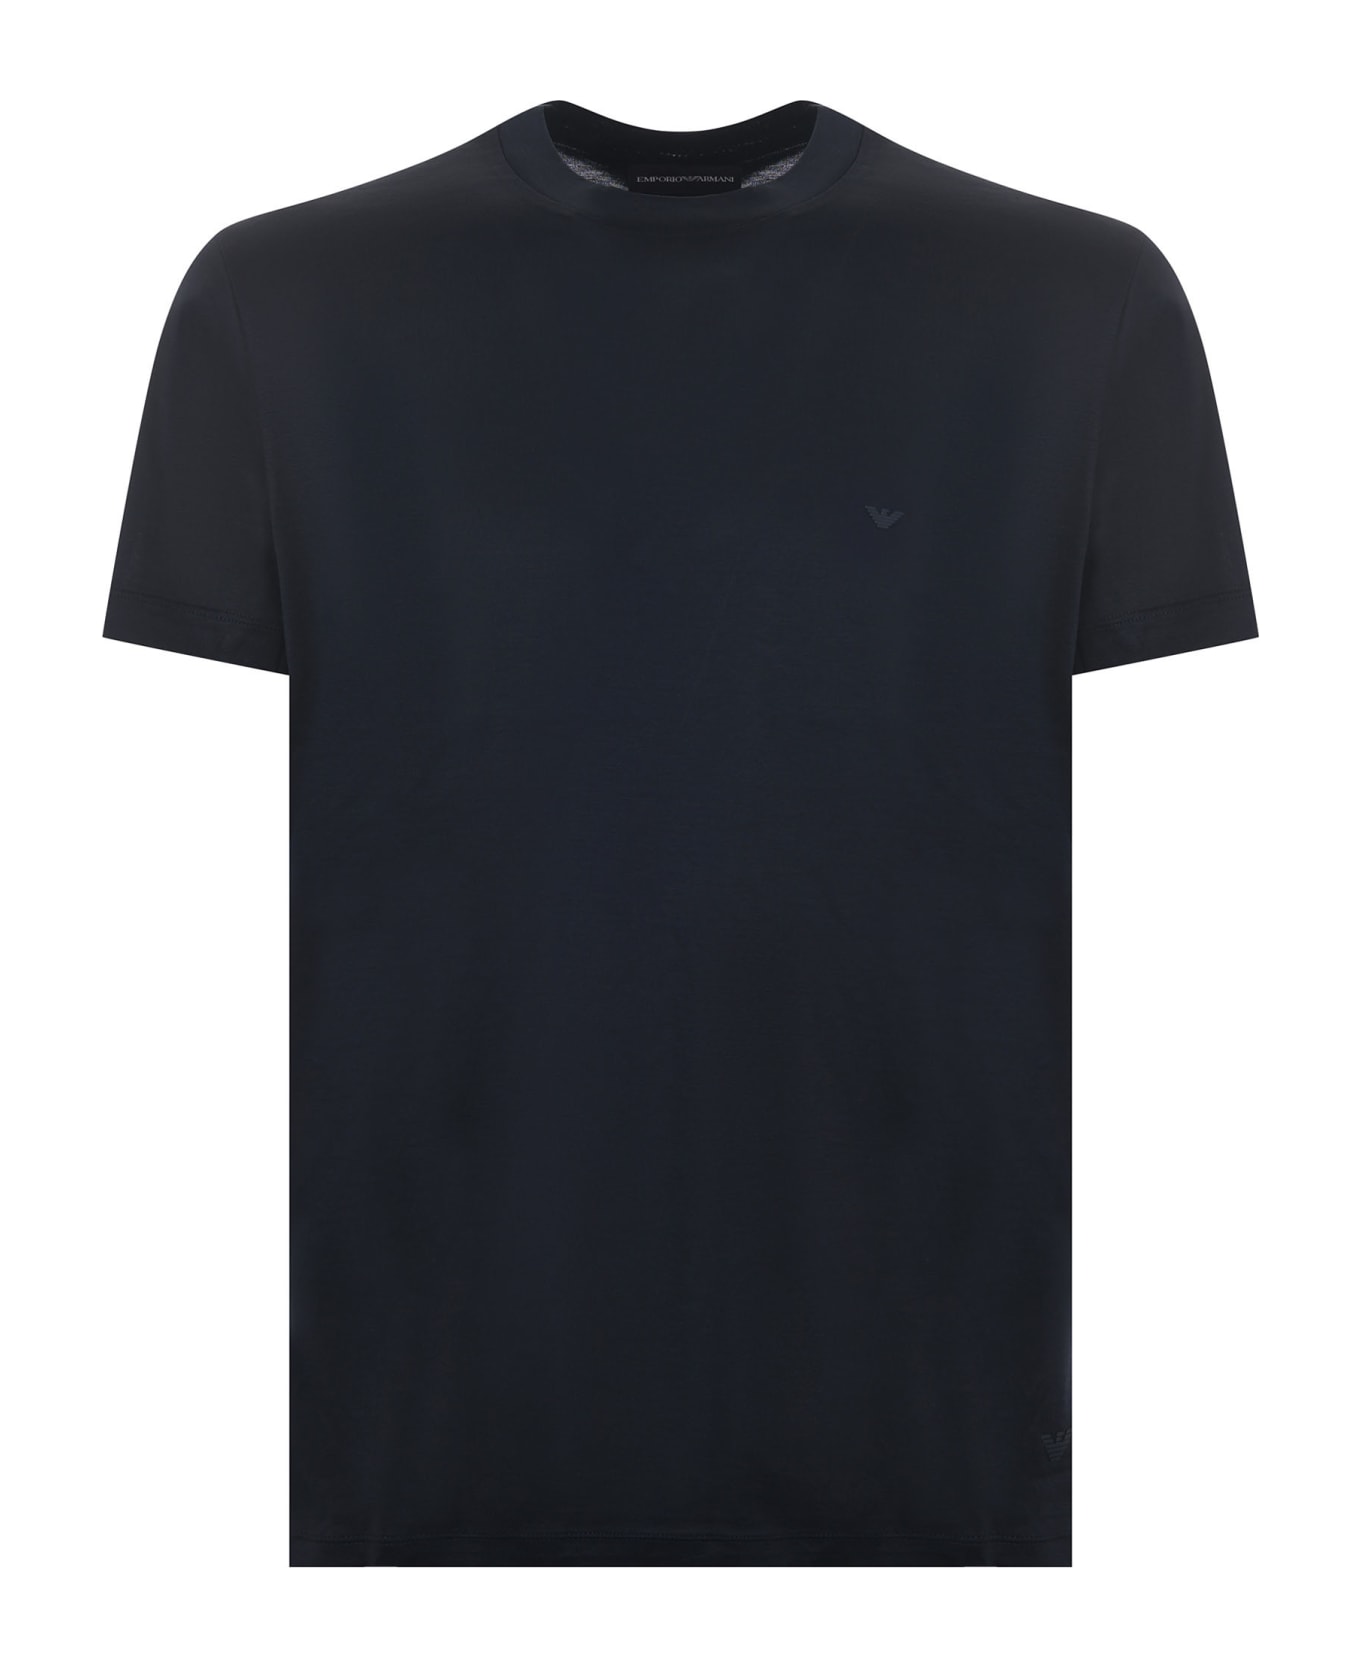 Emporio Armani T-shirt With Logo - Blu scuro シャツ